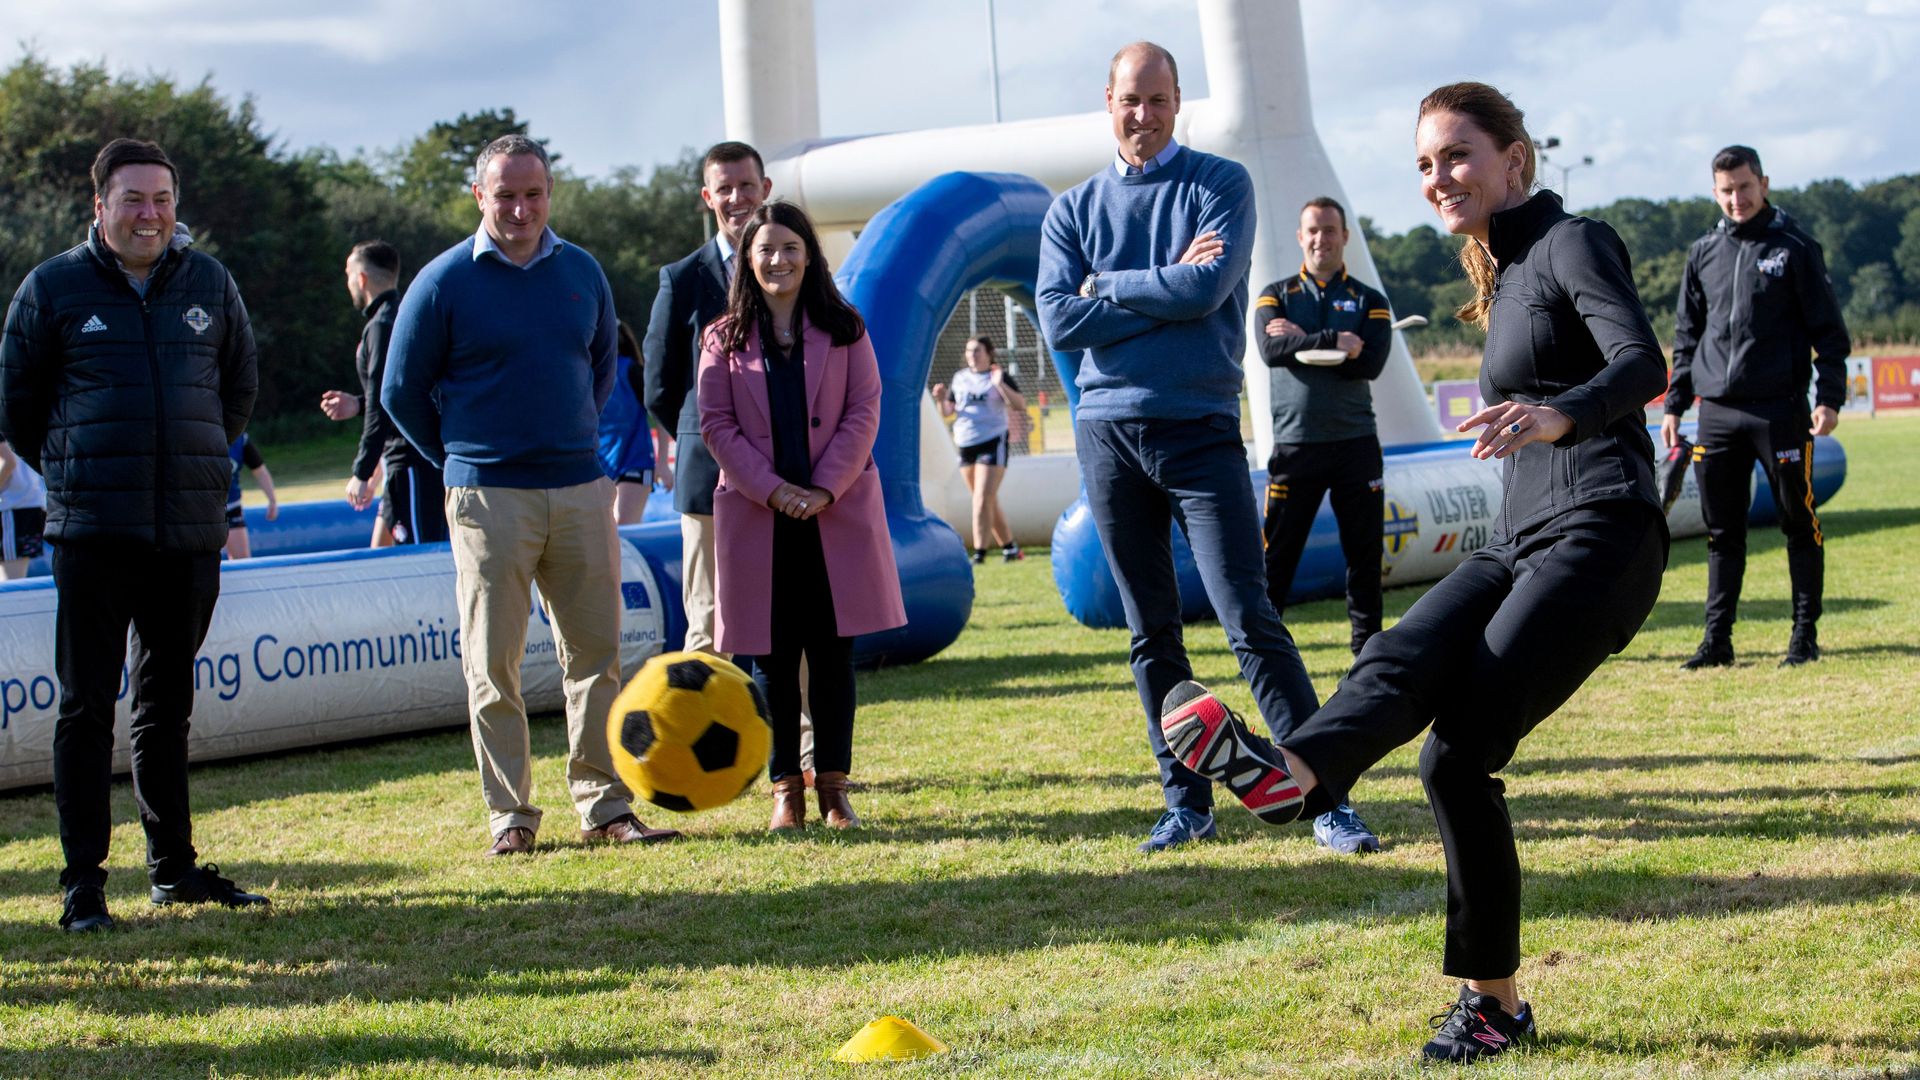 Kate Middleton kicking football in Northern Ireland